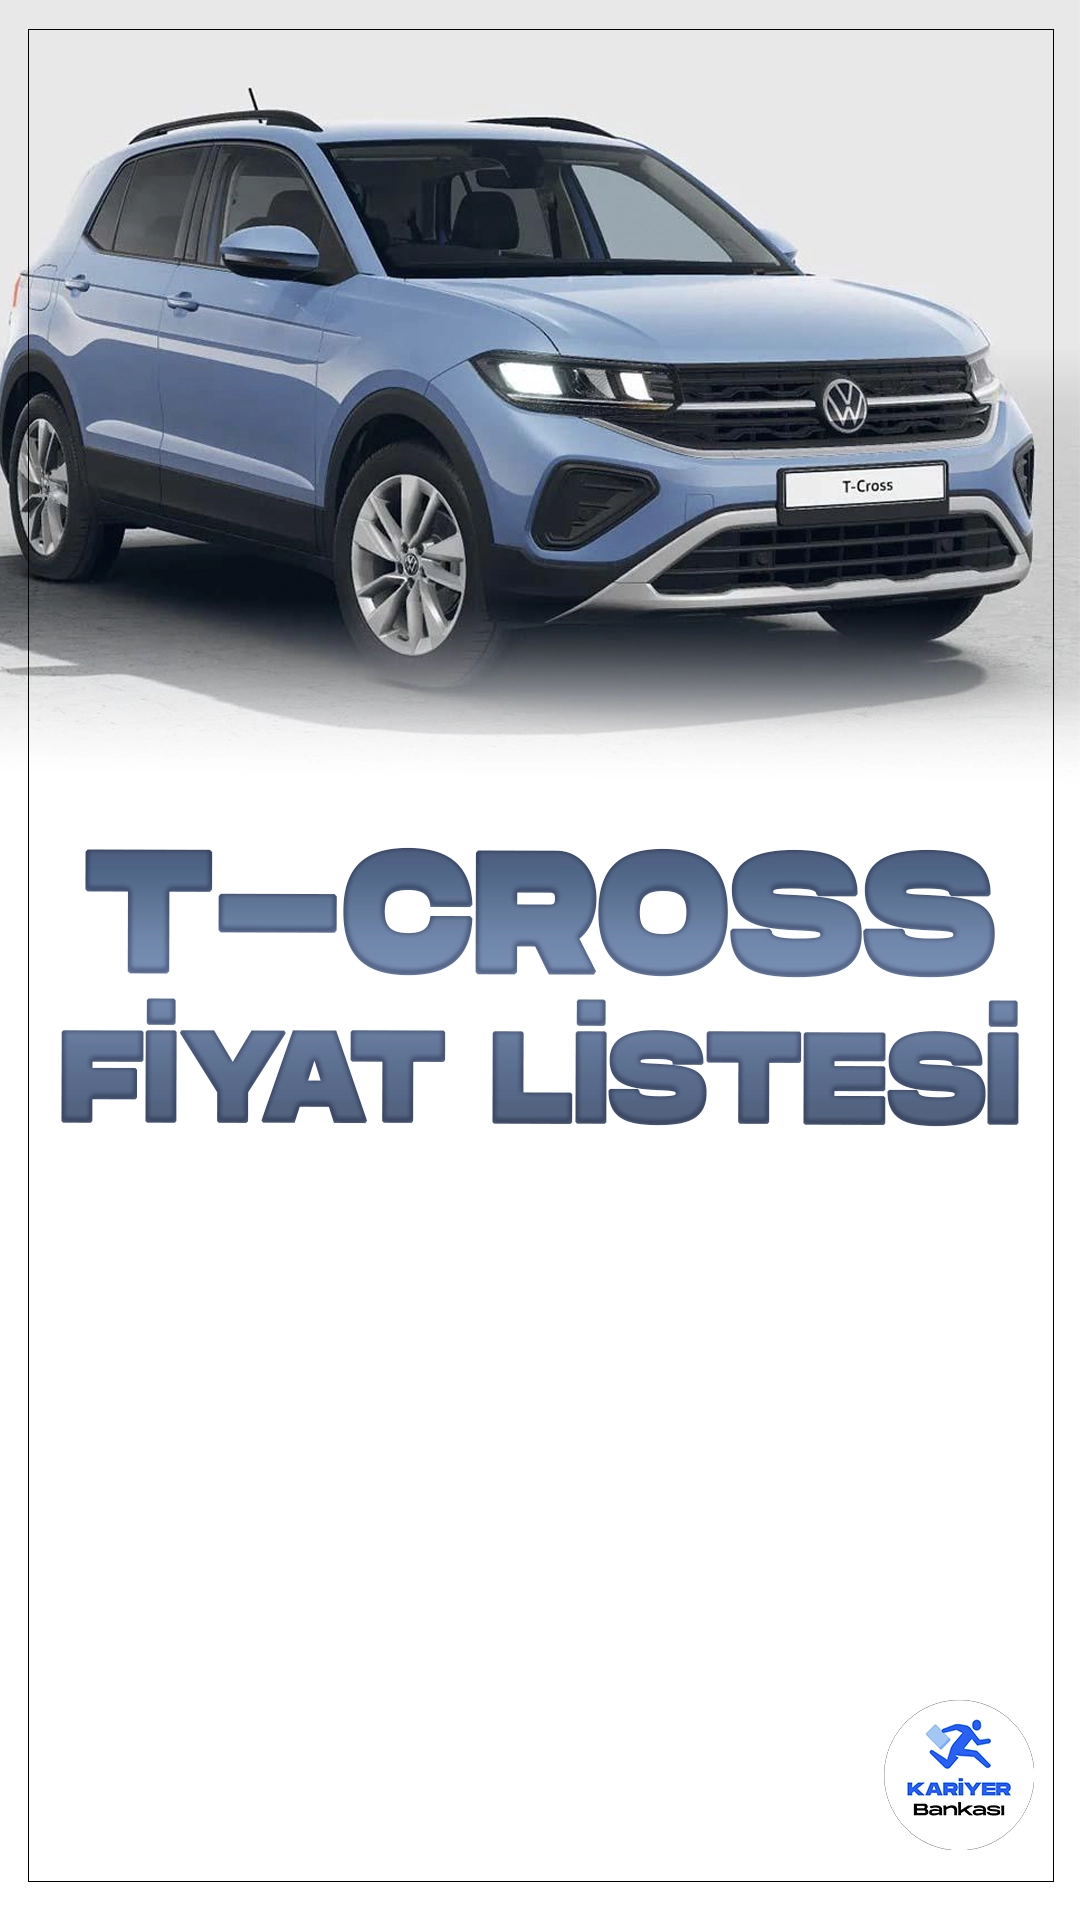 Volkswagen T-Cross Temmuz 2024 Fiyat Listesi Yayımlandı.Volkswagen'in şehirli SUV segmentindeki iddialı temsilcisi T-Cross, Türkiye yollarında kullanıcılarla buluşuyor. Tasarımı, konforu ve teknolojik özellikleriyle dikkat çeken T-Cross, özellikle şehir içi kullanımda sunduğu pratik çözümlerle öne çıkıyor.